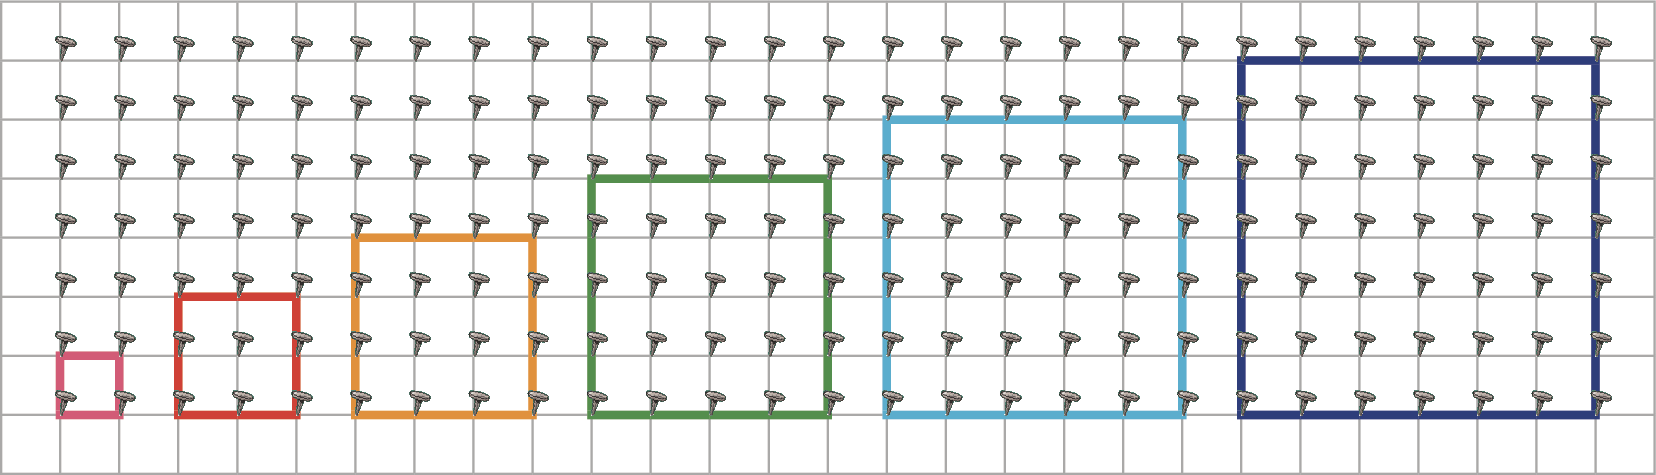 Ilustração. Geoplano, composto por base com linhas e colunas de pregos. Elásticos coloridos formam sequência de 5 quadrados cujos lados têm medidas crescentes.